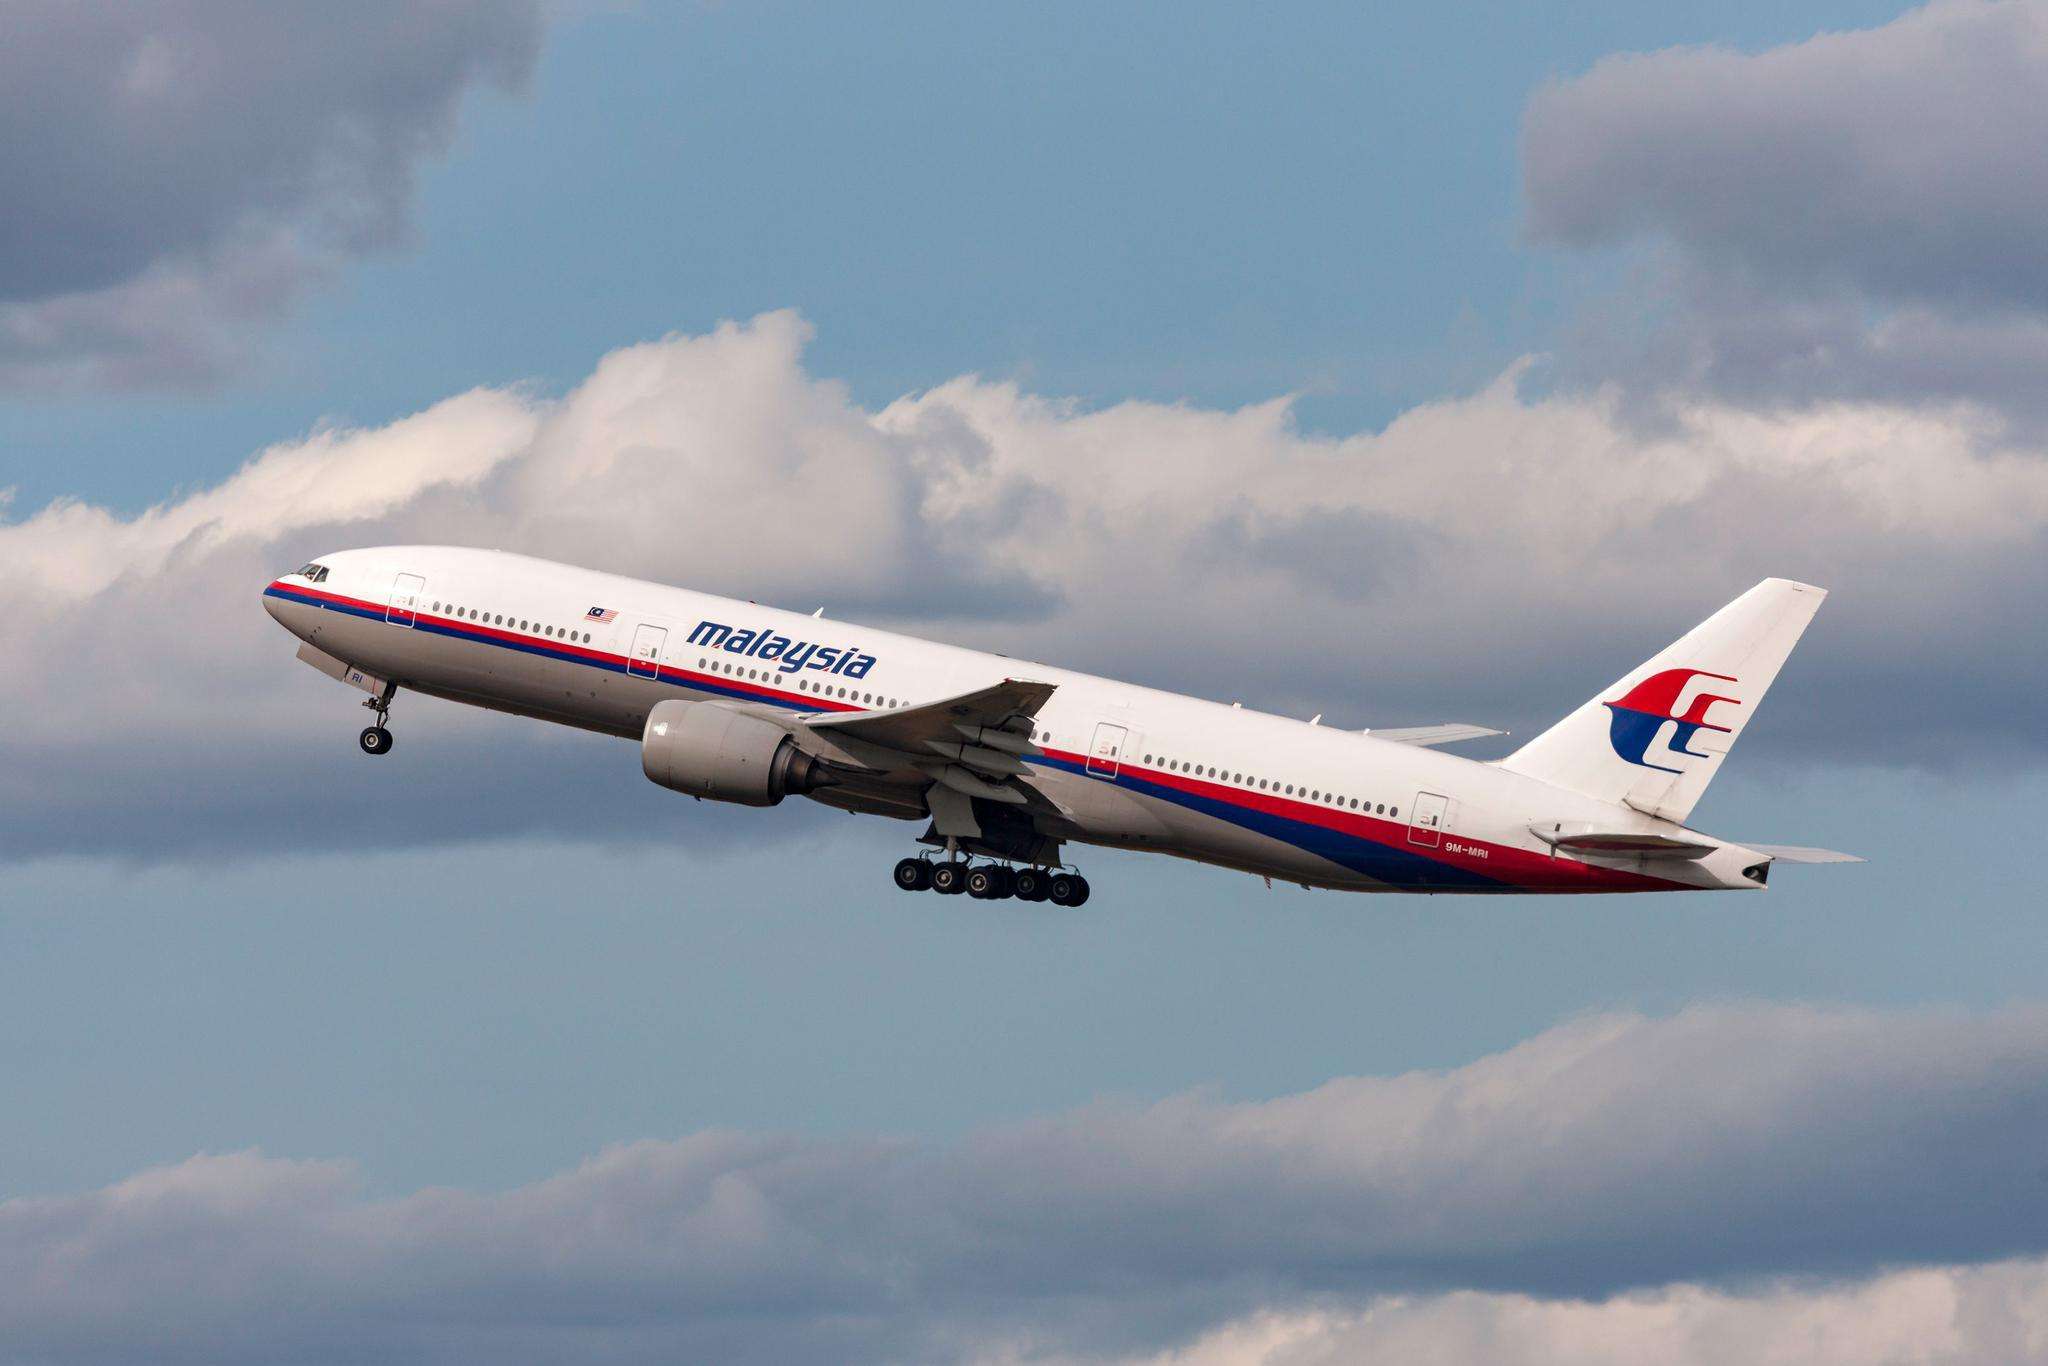 mh370案新证据浮现,重启搜索指日可待,马来西亚官方却犹豫了